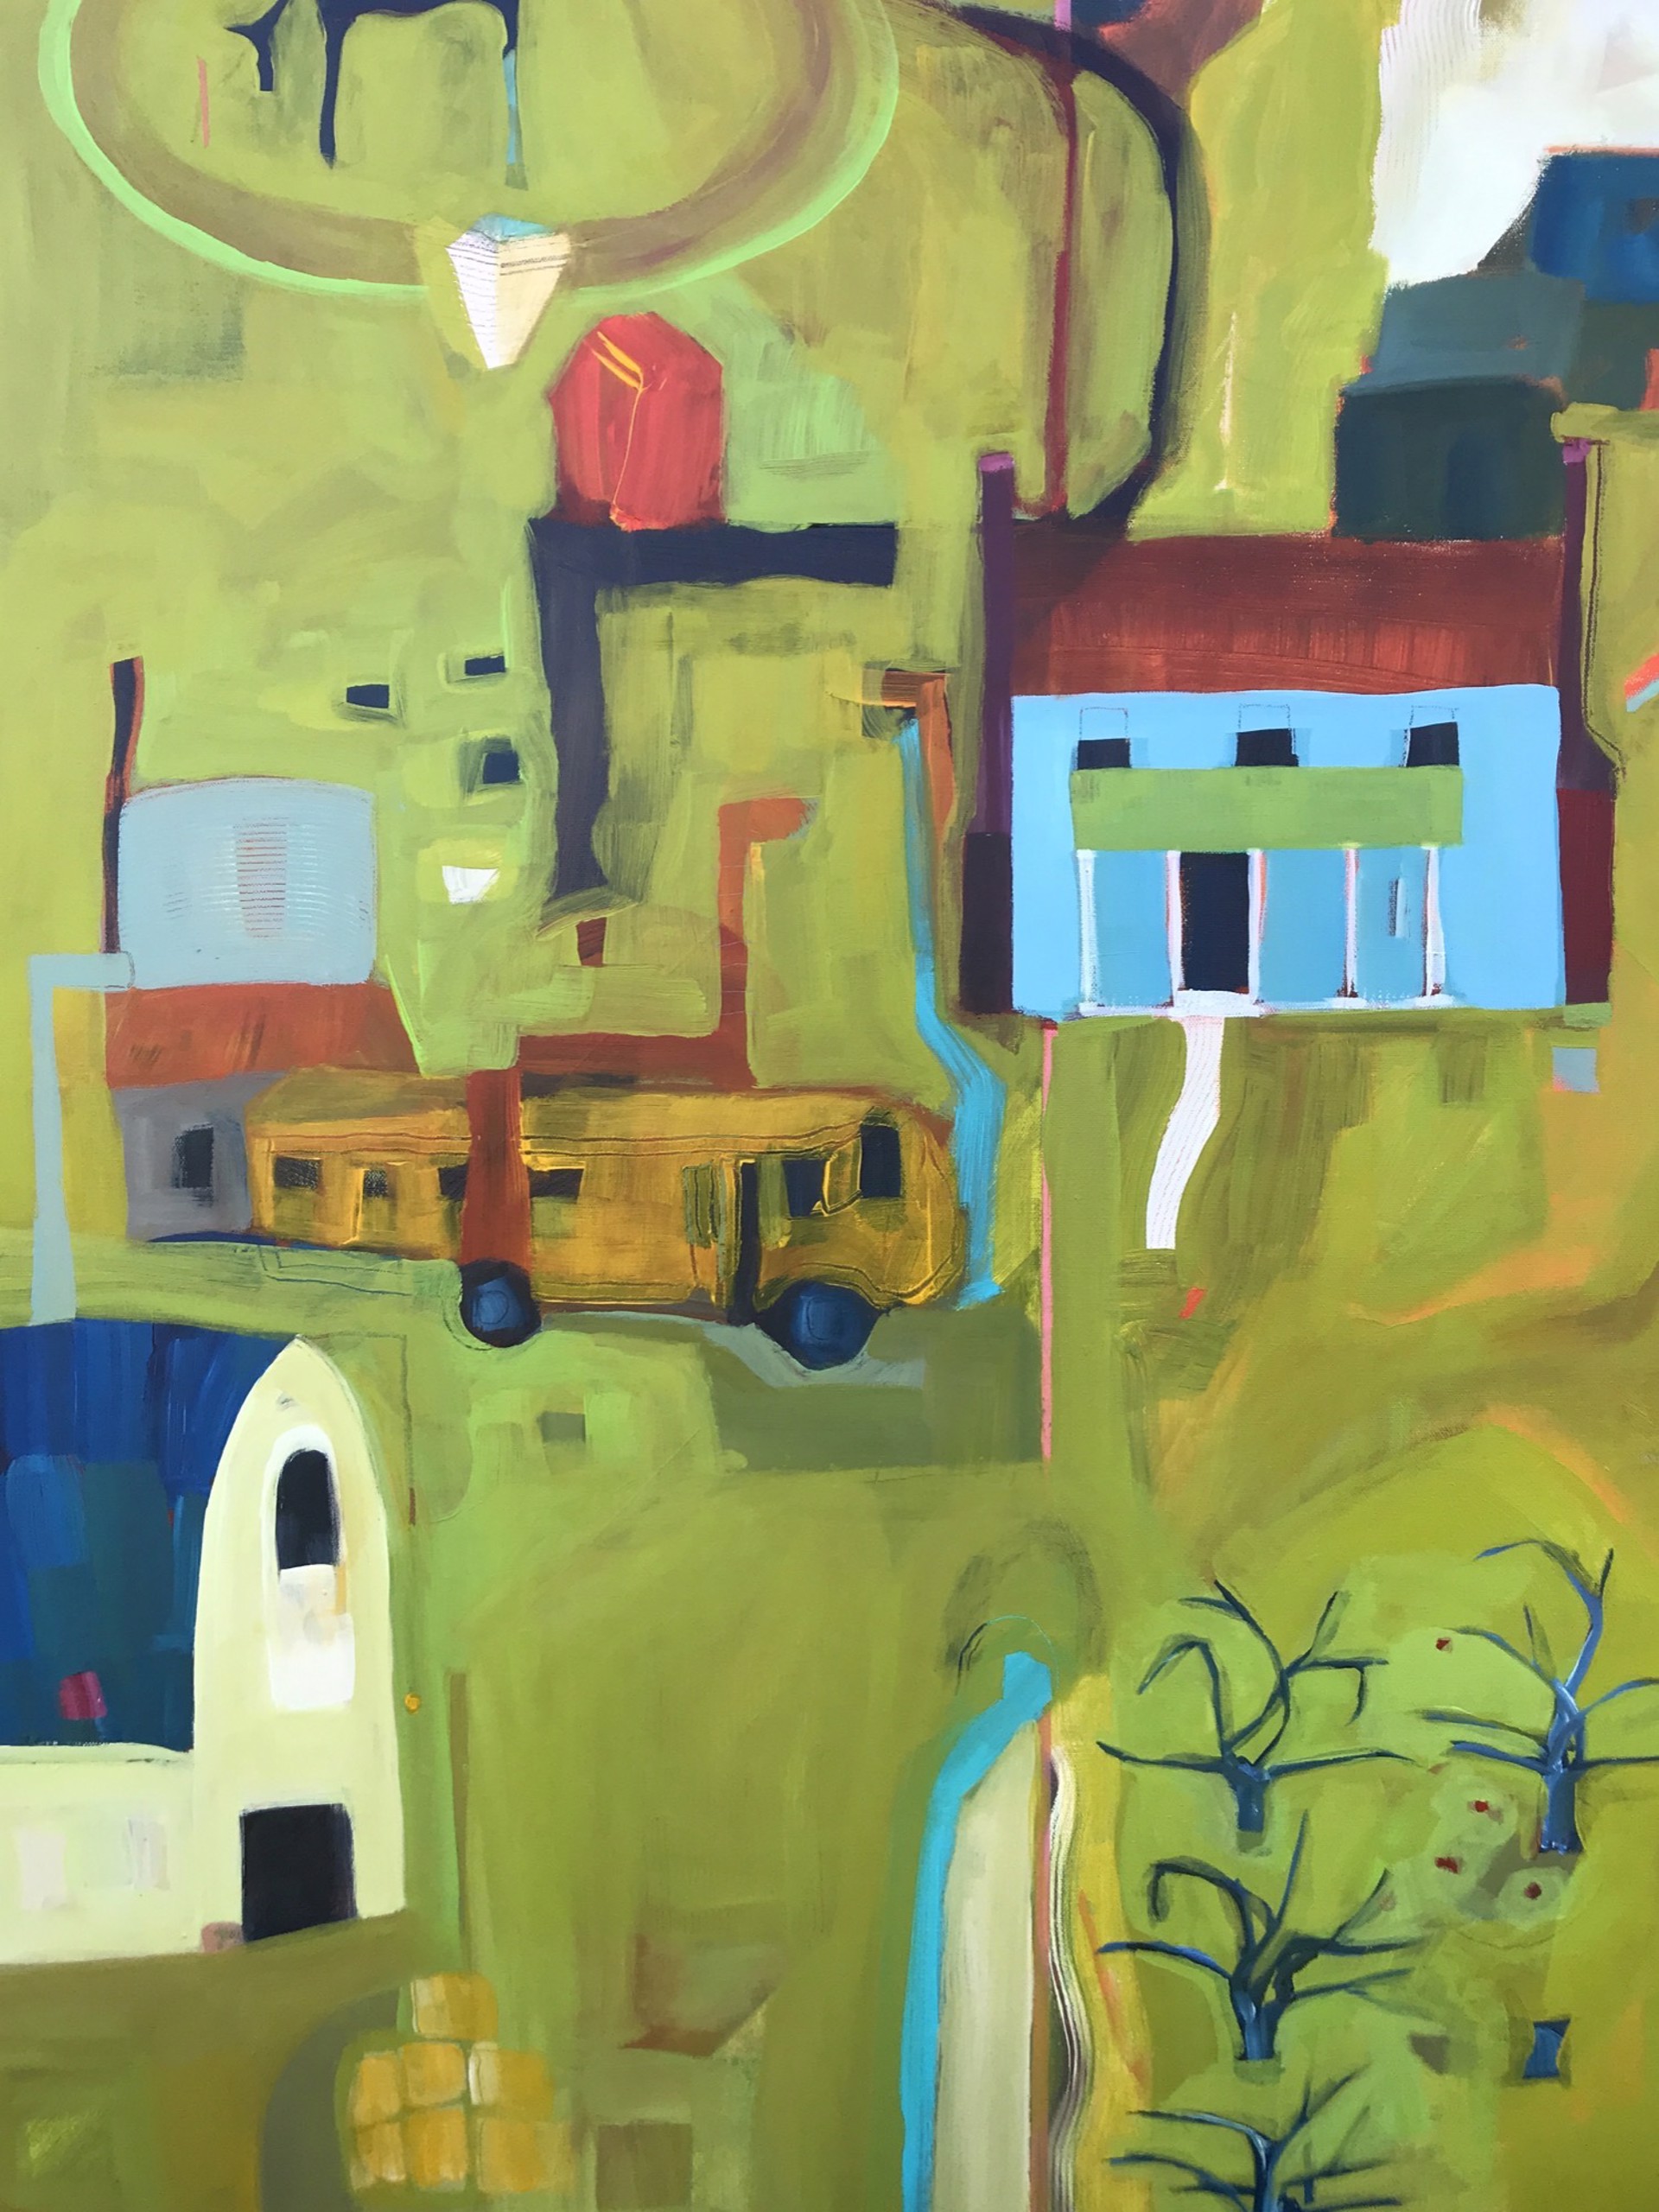 Blue House, Broken Bus and Water Tank by Rachael Van Dyke